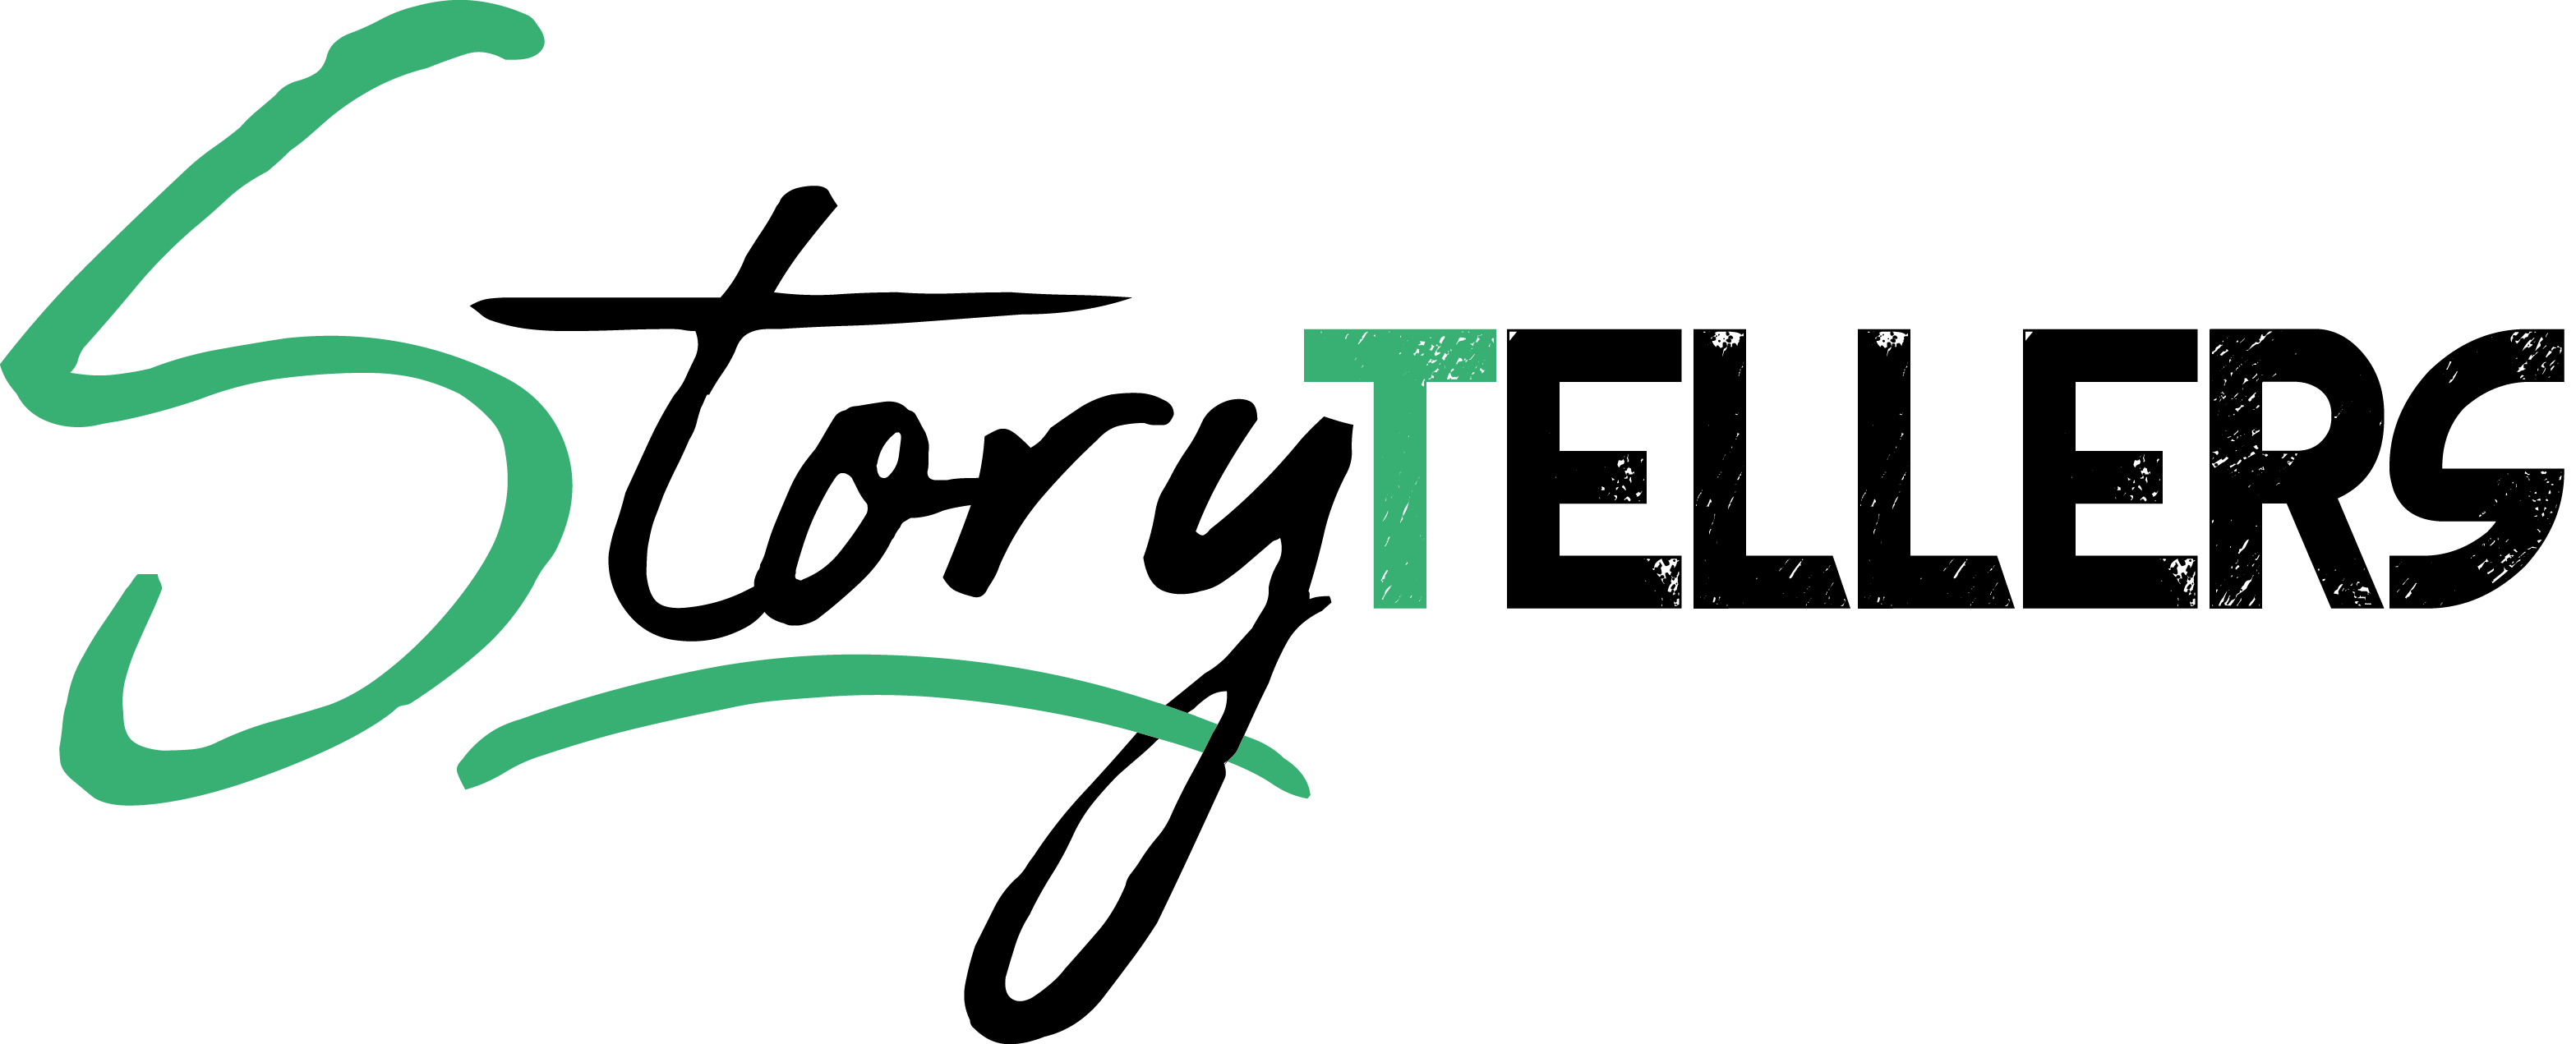 logo storytellers negro y verde